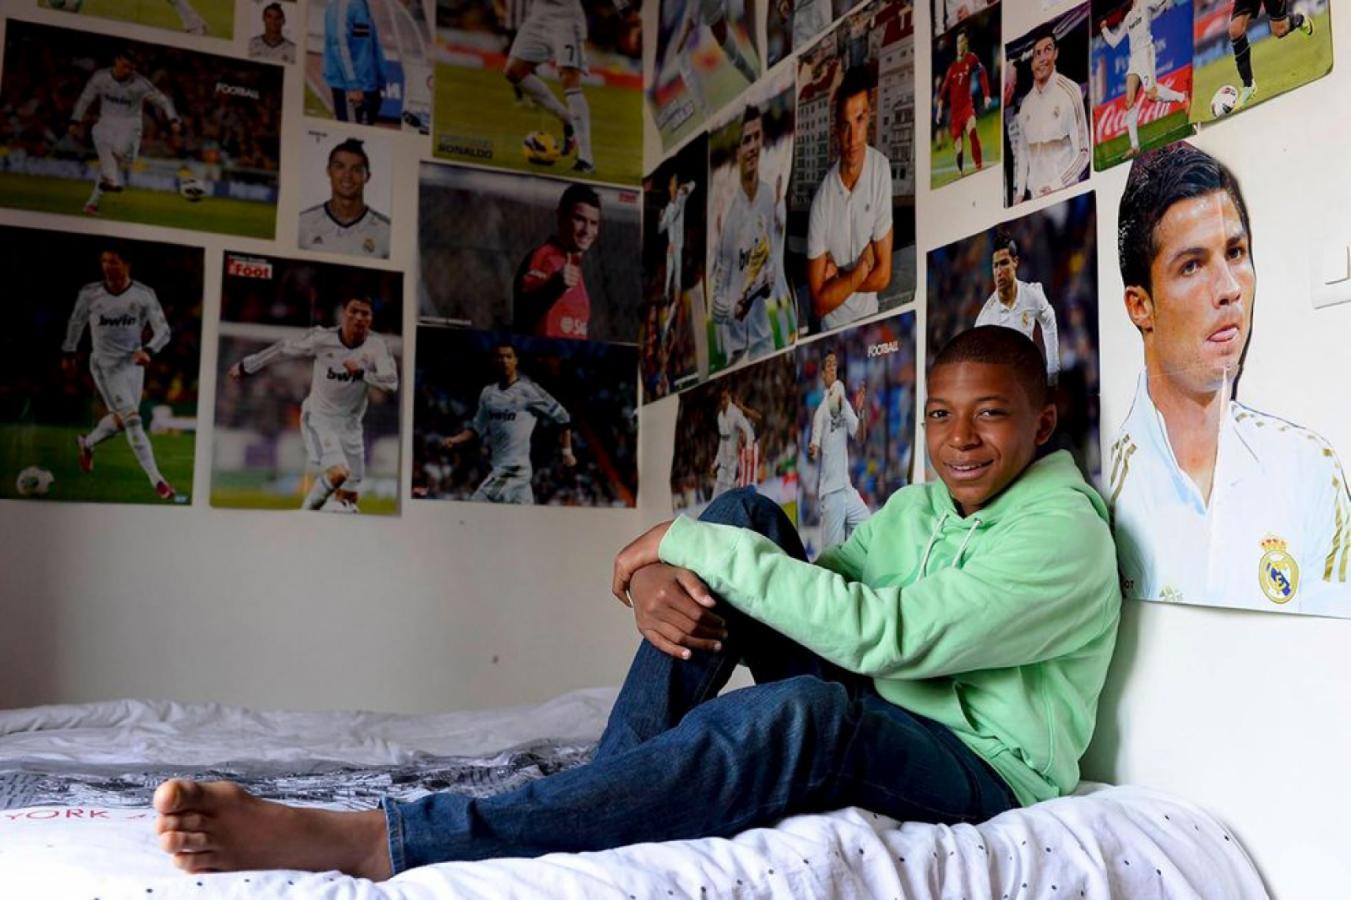 Imagen La admiración de Mbappé por CR7 reflejada en su habitación de adolescente. Foto revista Esquire.